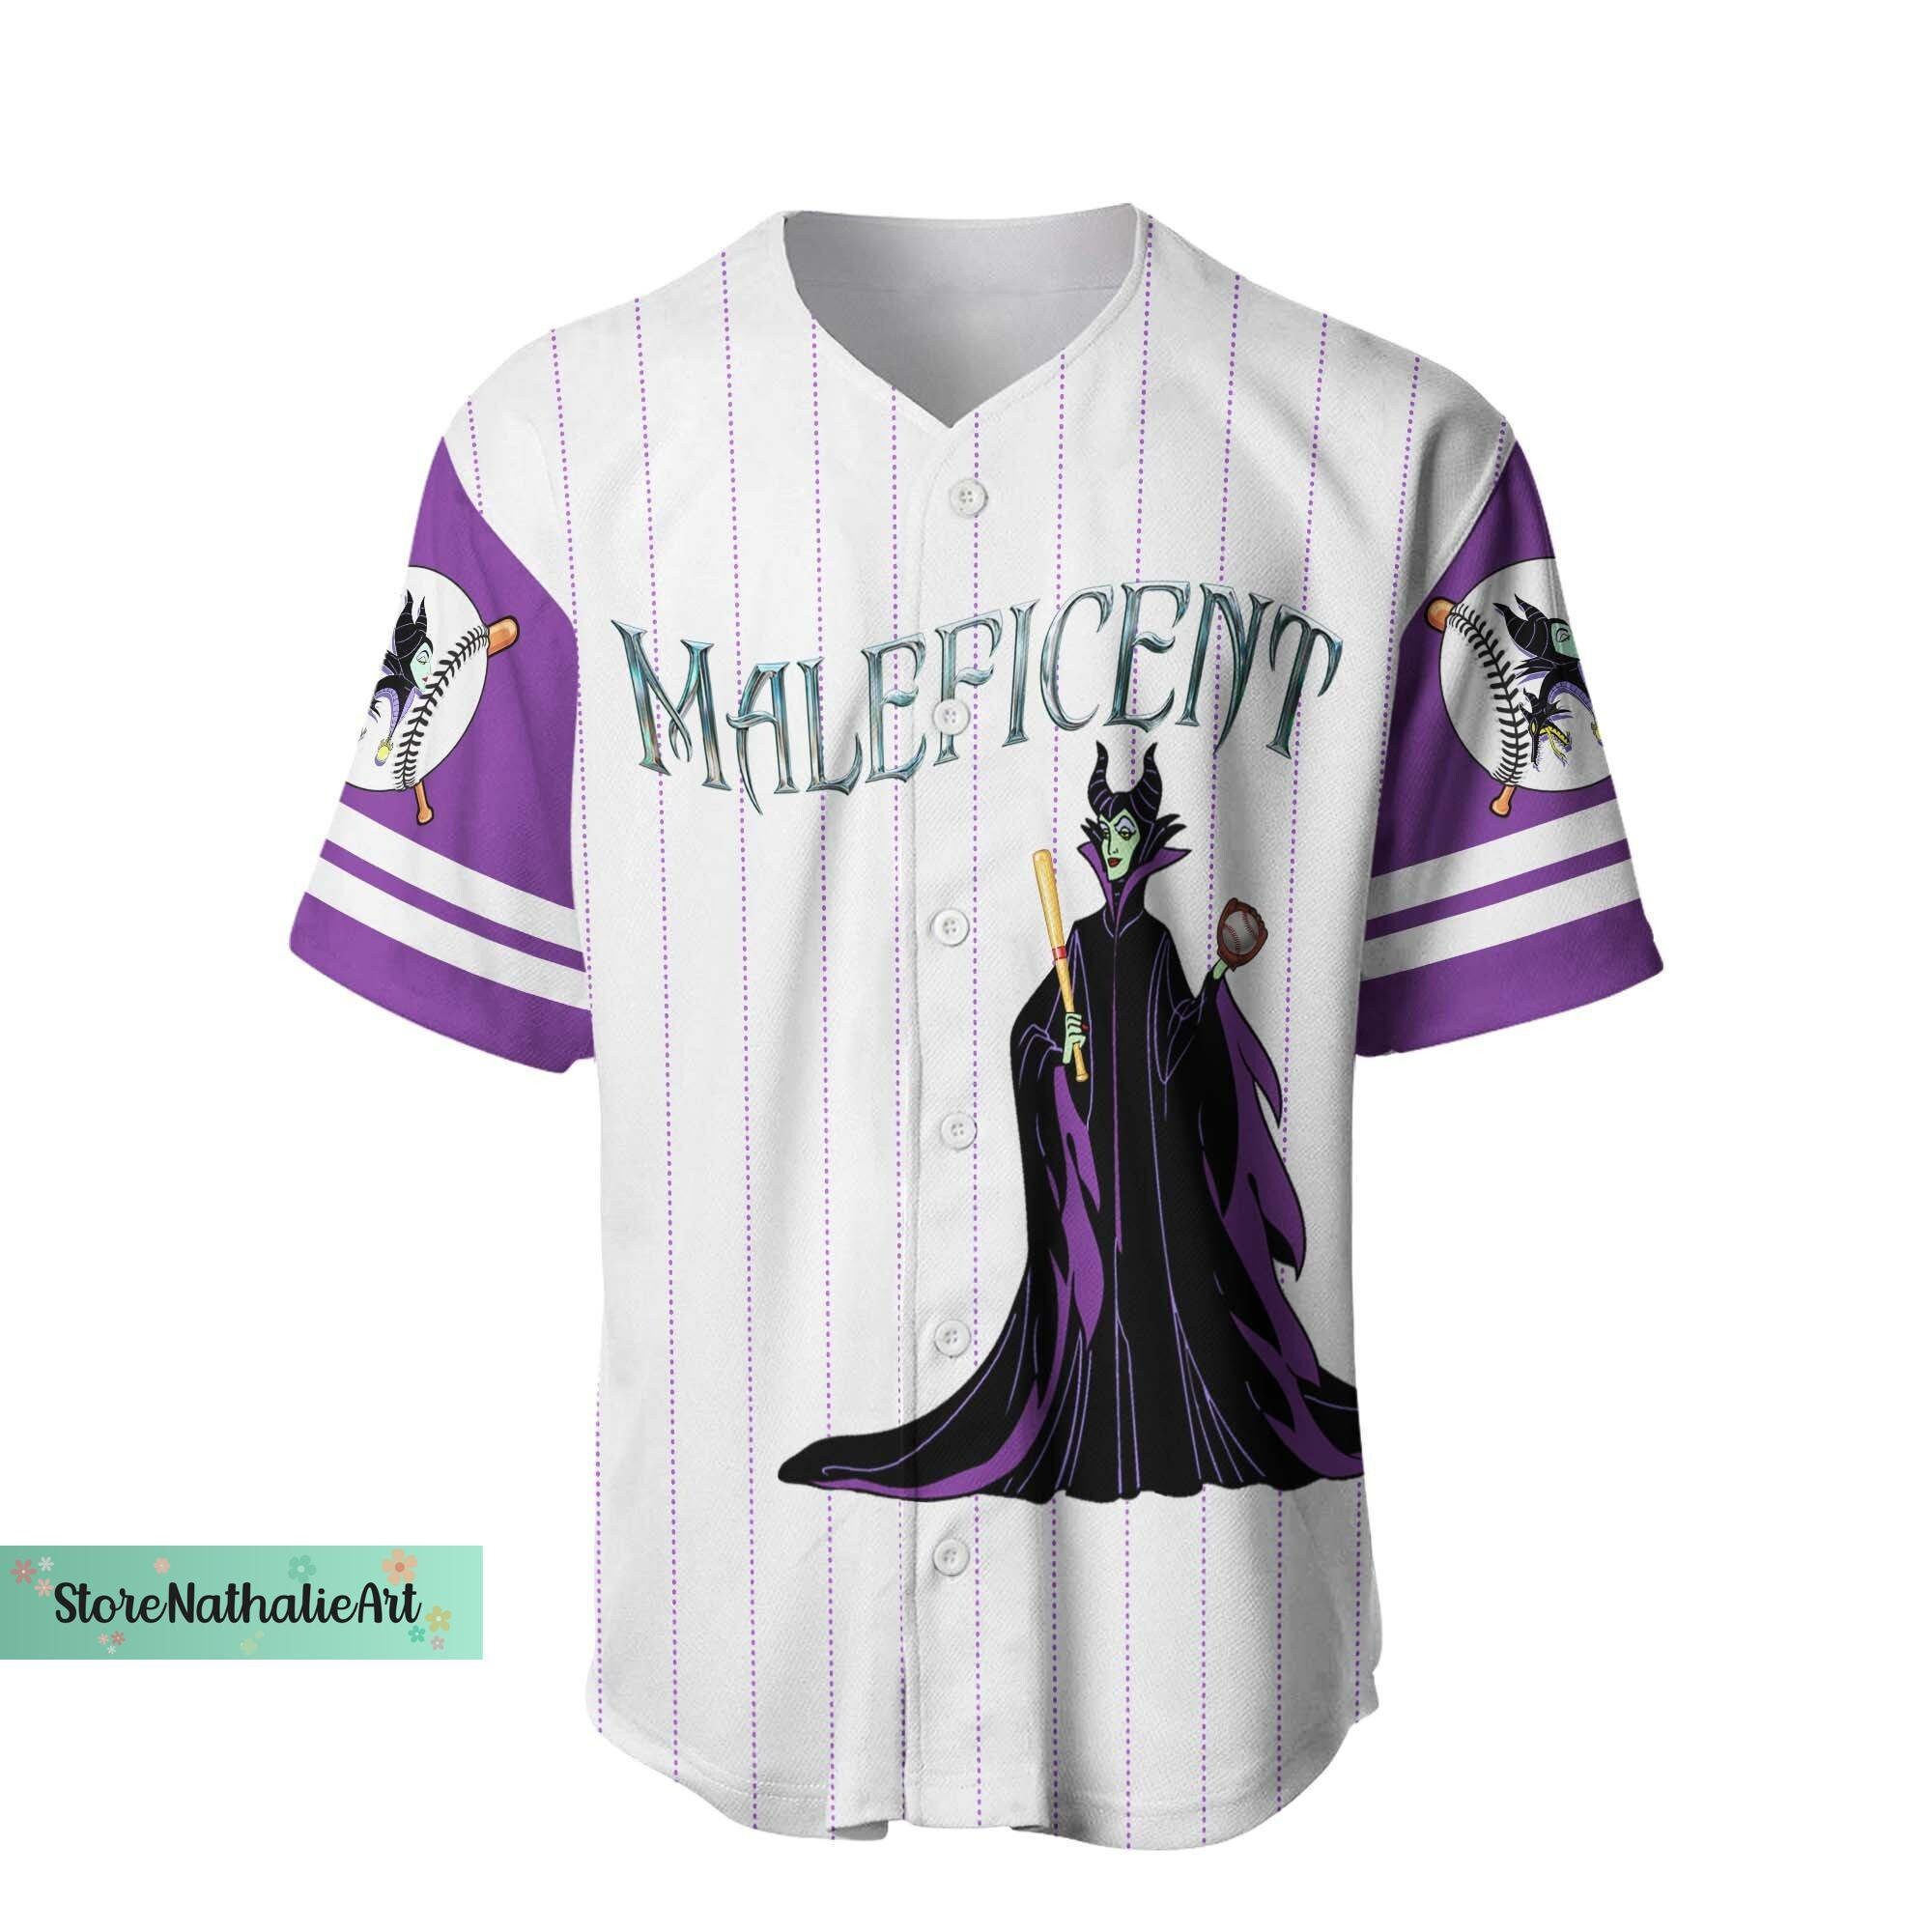 Maleficent Jersey Shirt, Maleficent Baseball Jersey, Evil Queen Jersey Shirt